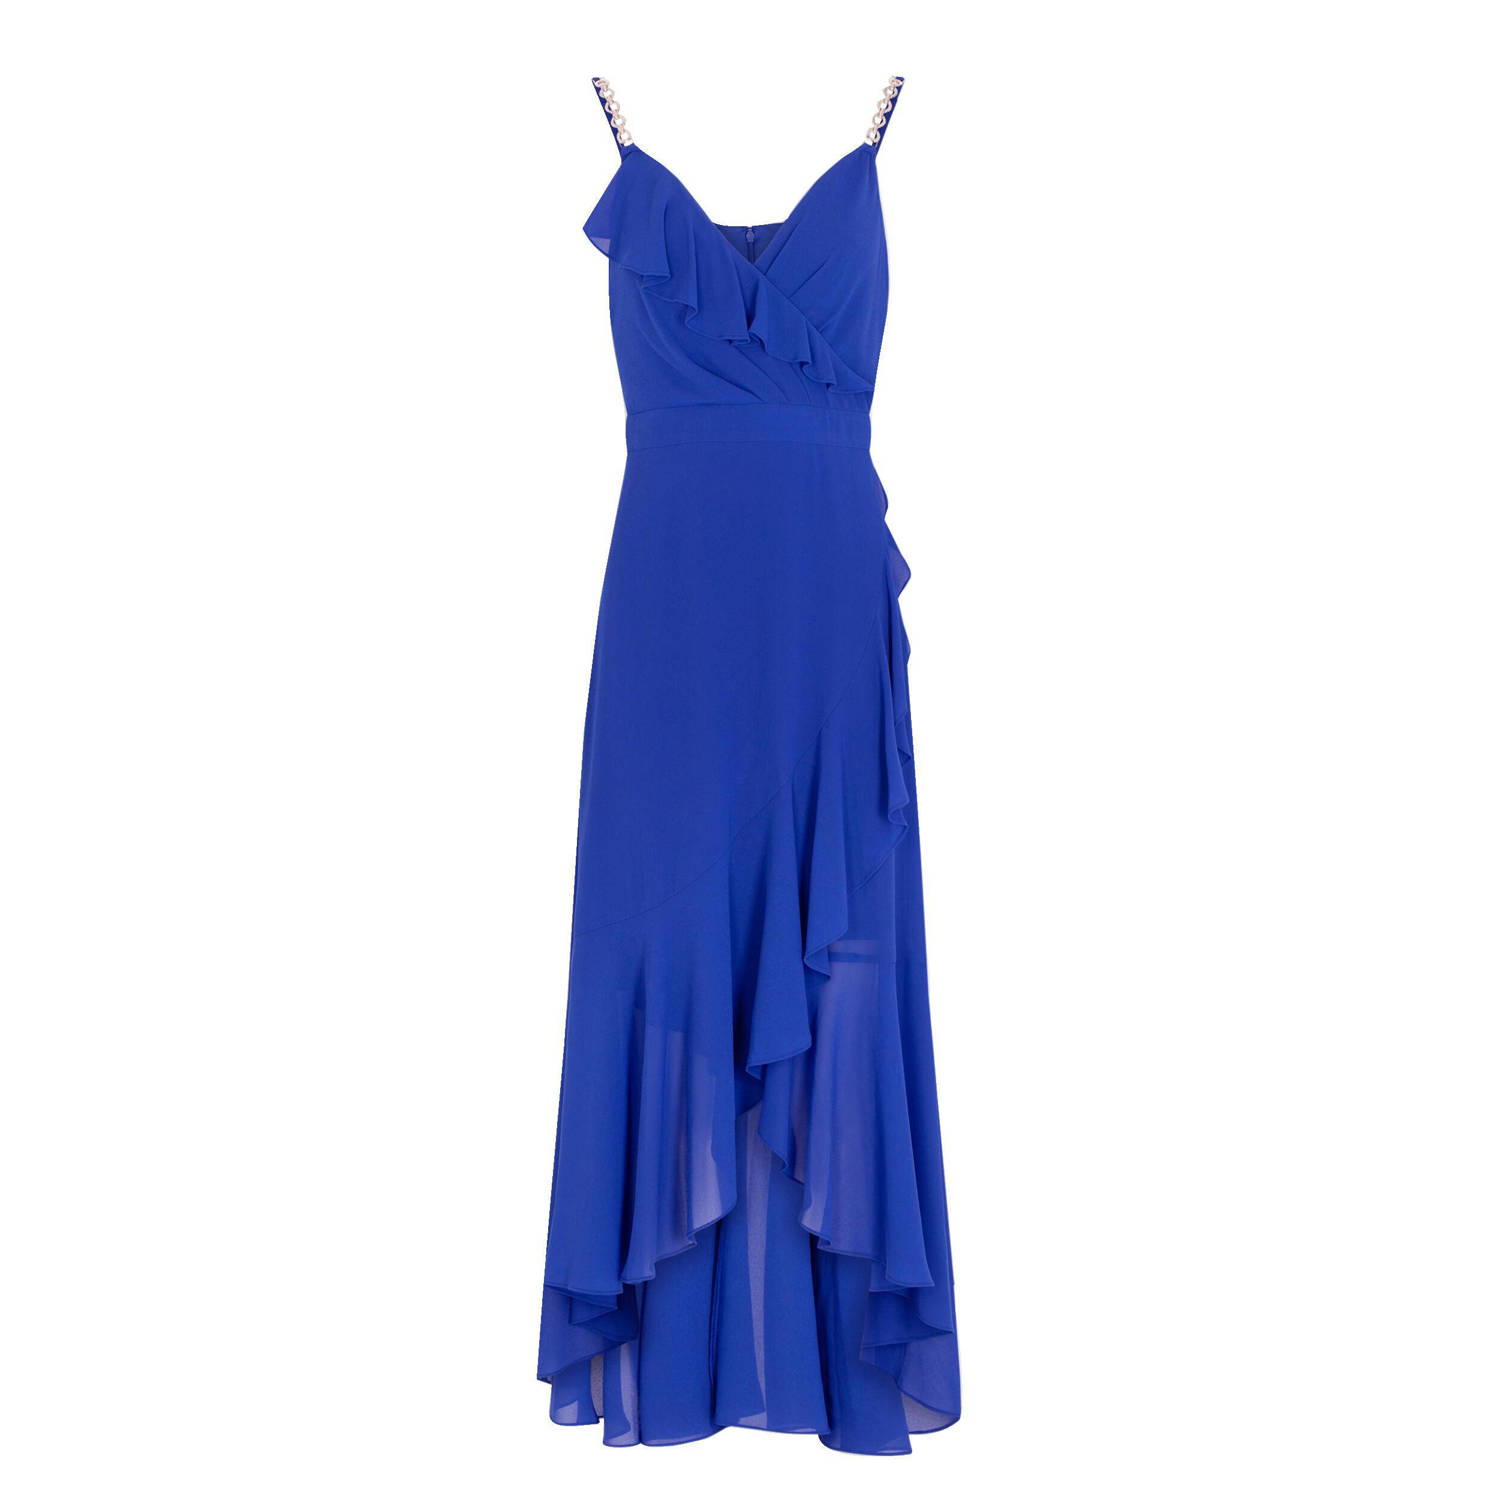 Morgan semi-transparante jurk blauw